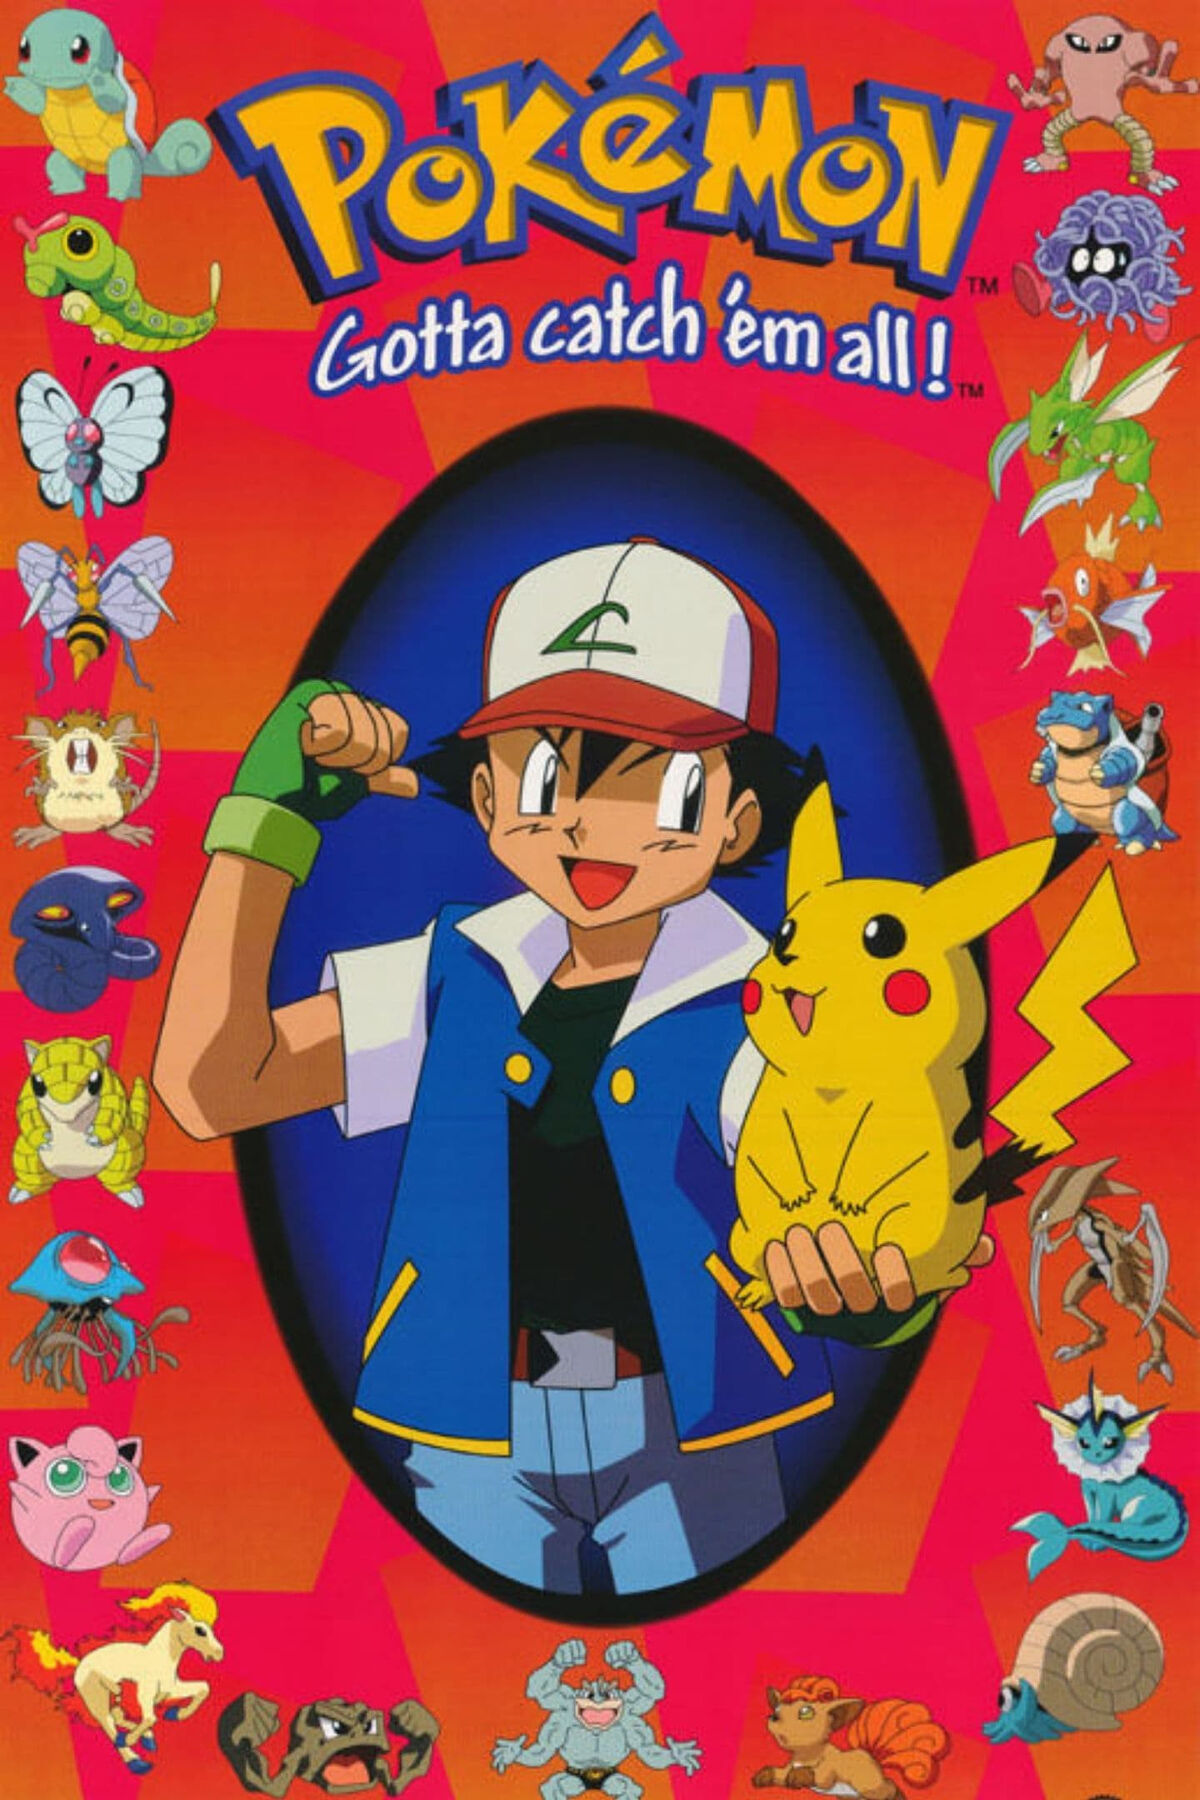 Покемон 1998. Пикачу покемон 1998. Pokemon Master Quest posters. Плакат с покемонами купить.